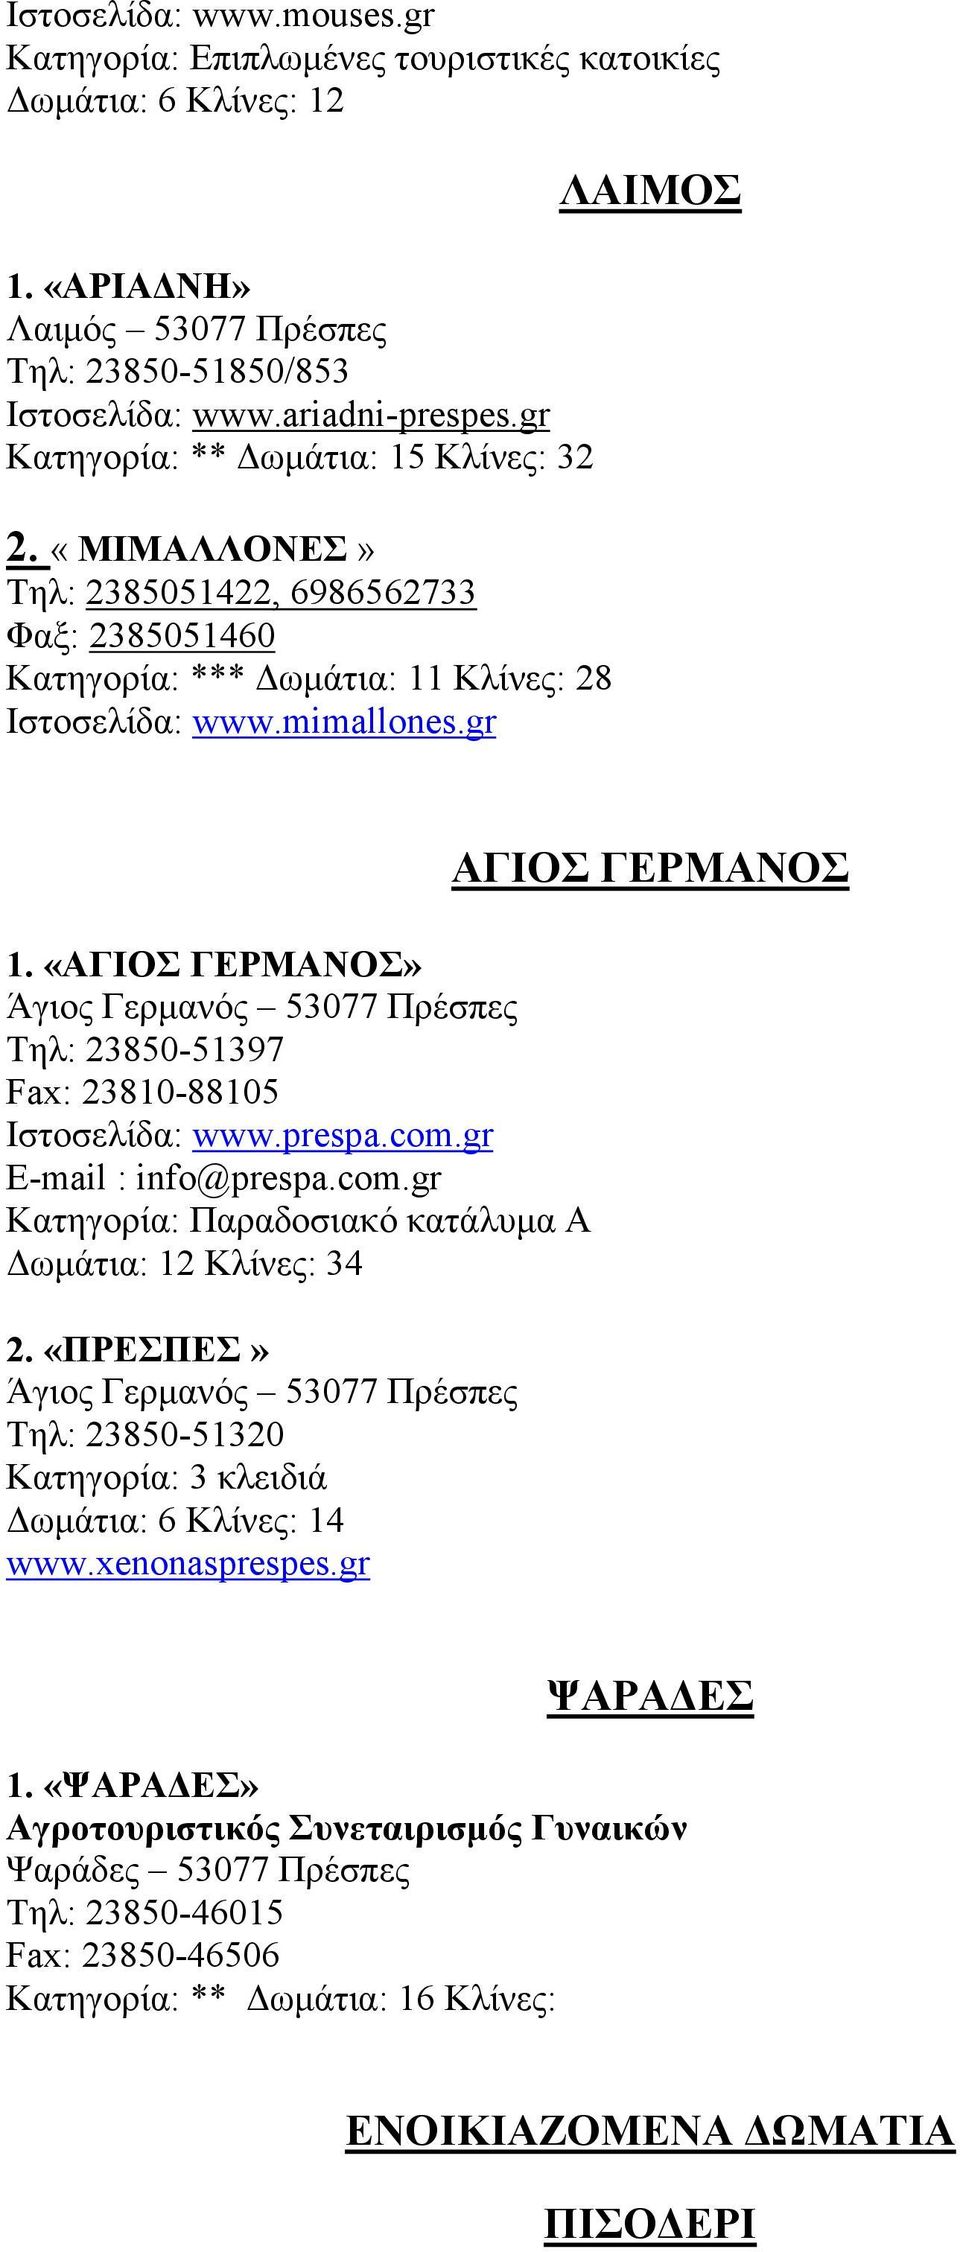 «ΑΓΙΟΣ ΓΕΡΜΑΝΟΣ» Άγιος Γερµανός 53077 Πρέσπες Τηλ: 23850-51397 Fax: 23810-88105 Ιστοσελίδα: www.prespa.com.gr E-mail : info@prespa.com.gr Κατηγορία: Παραδοσιακό κατάλυµα Α ωµάτια: 12 Κλίνες: 34 2.